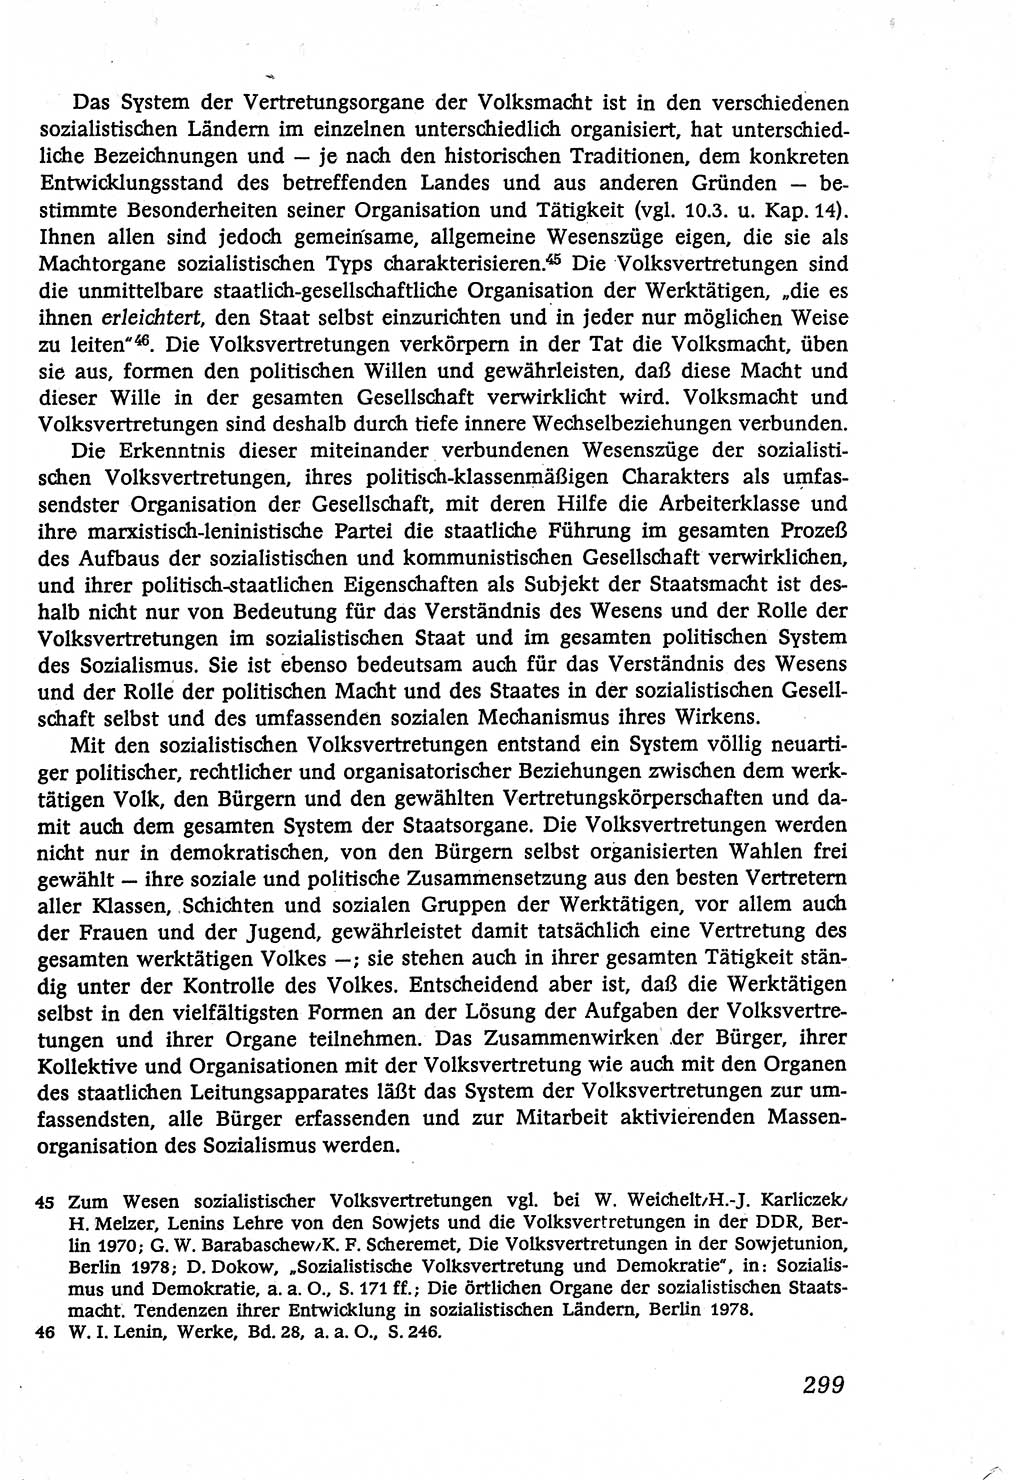 Marxistisch-leninistische (ML) Staats- und Rechtstheorie [Deutsche Demokratische Republik (DDR)], Lehrbuch 1980, Seite 299 (ML St.-R.-Th. DDR Lb. 1980, S. 299)